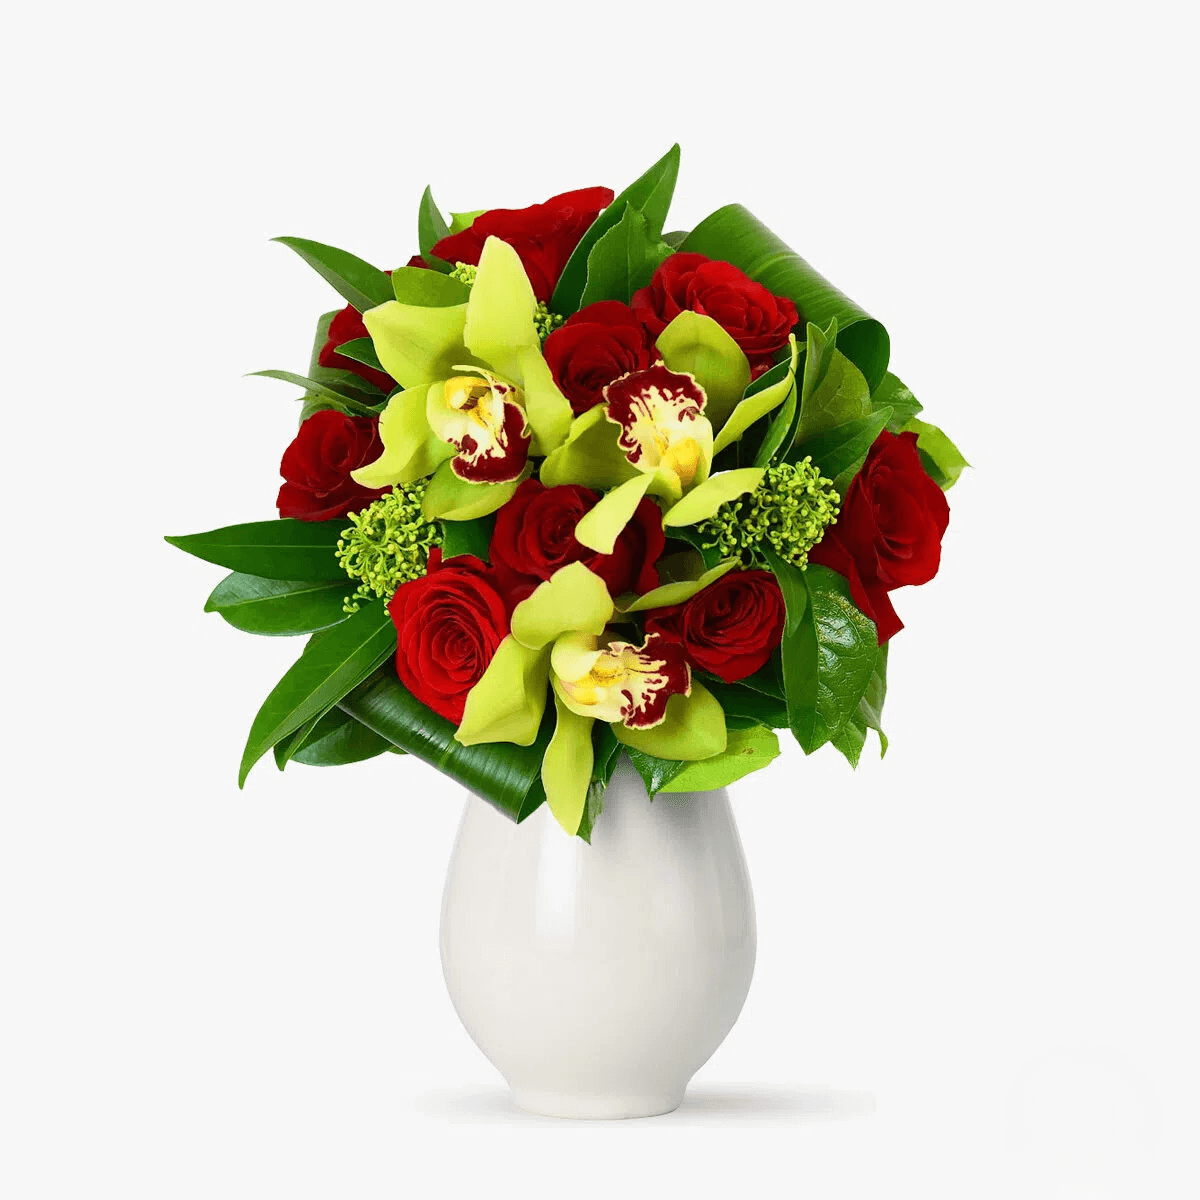 Buchet de flori – Decoratiuni florale – Premium Buchet